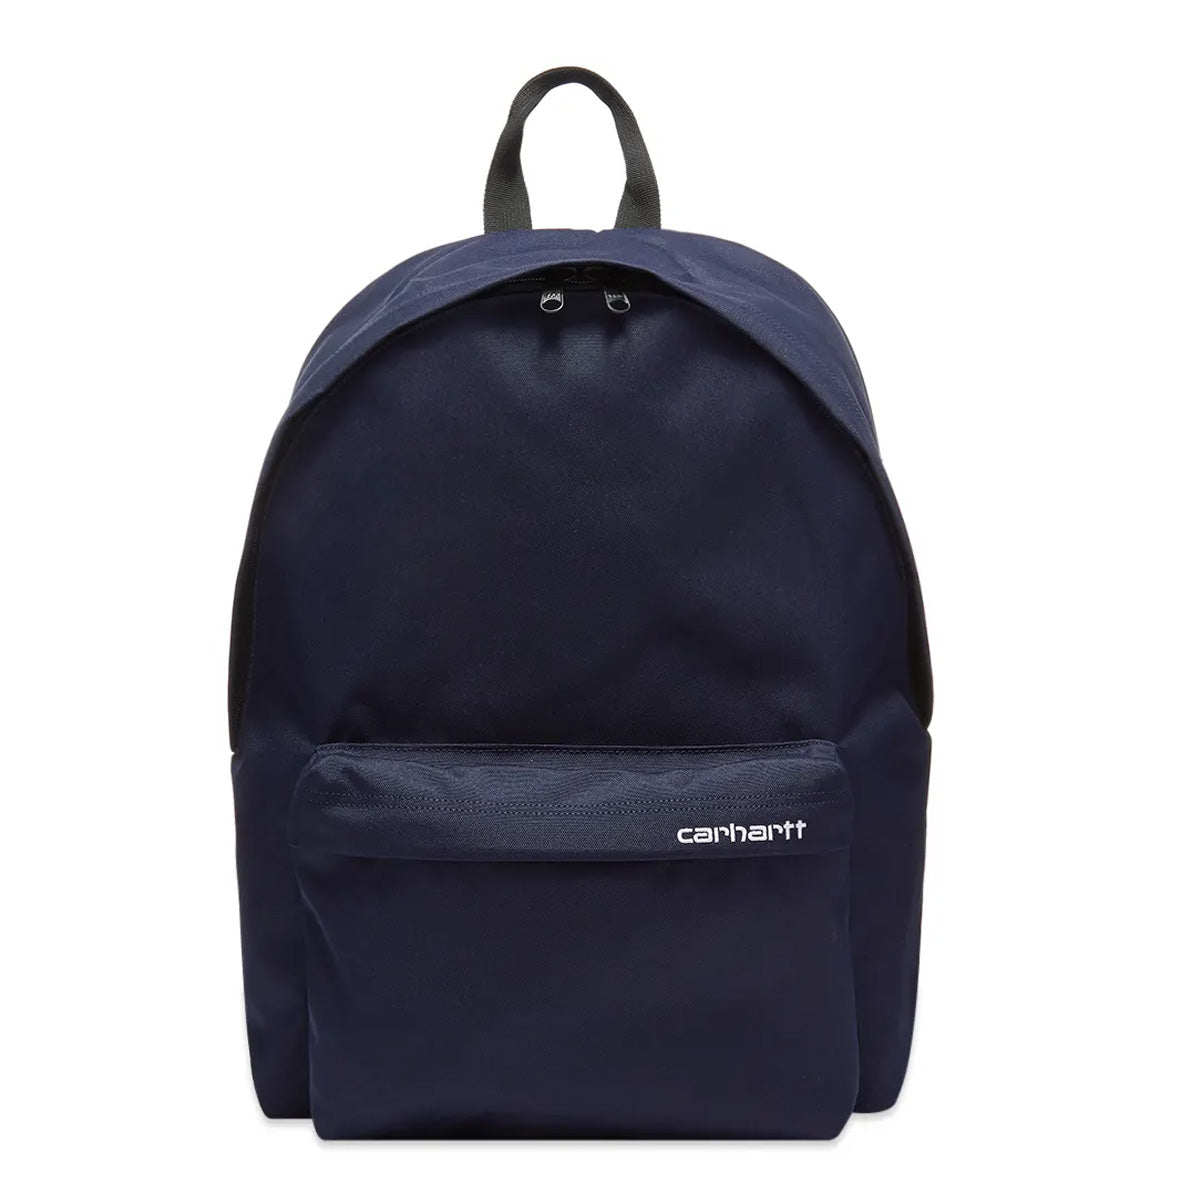 Payton Backpack